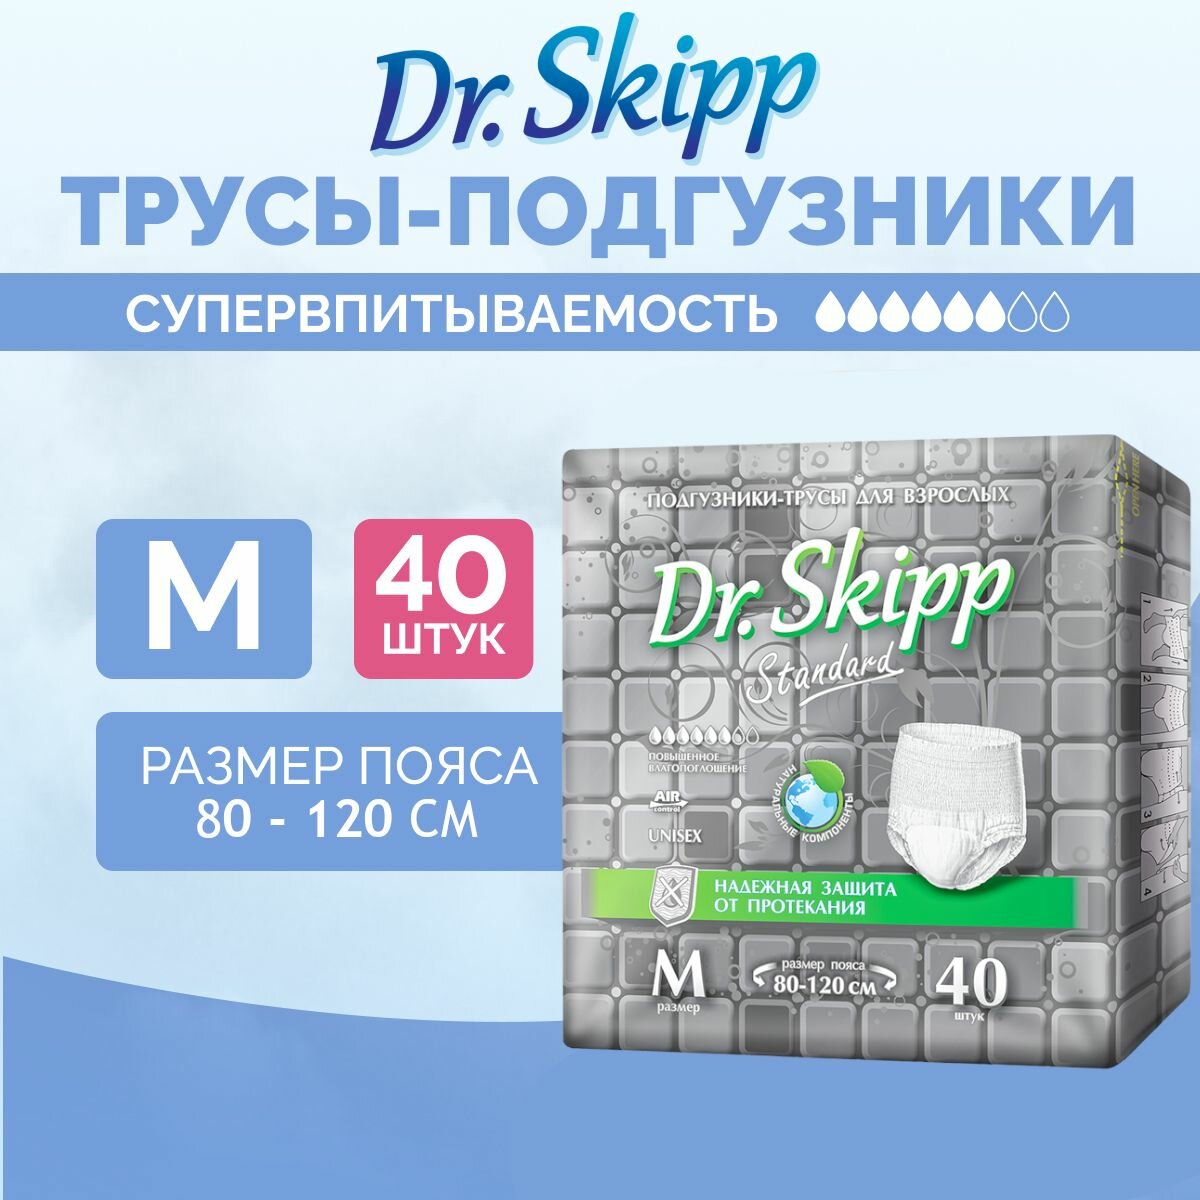 Подгузники-трусы для взрослых Dr. Skipp Standard М, 40 шт., 8151